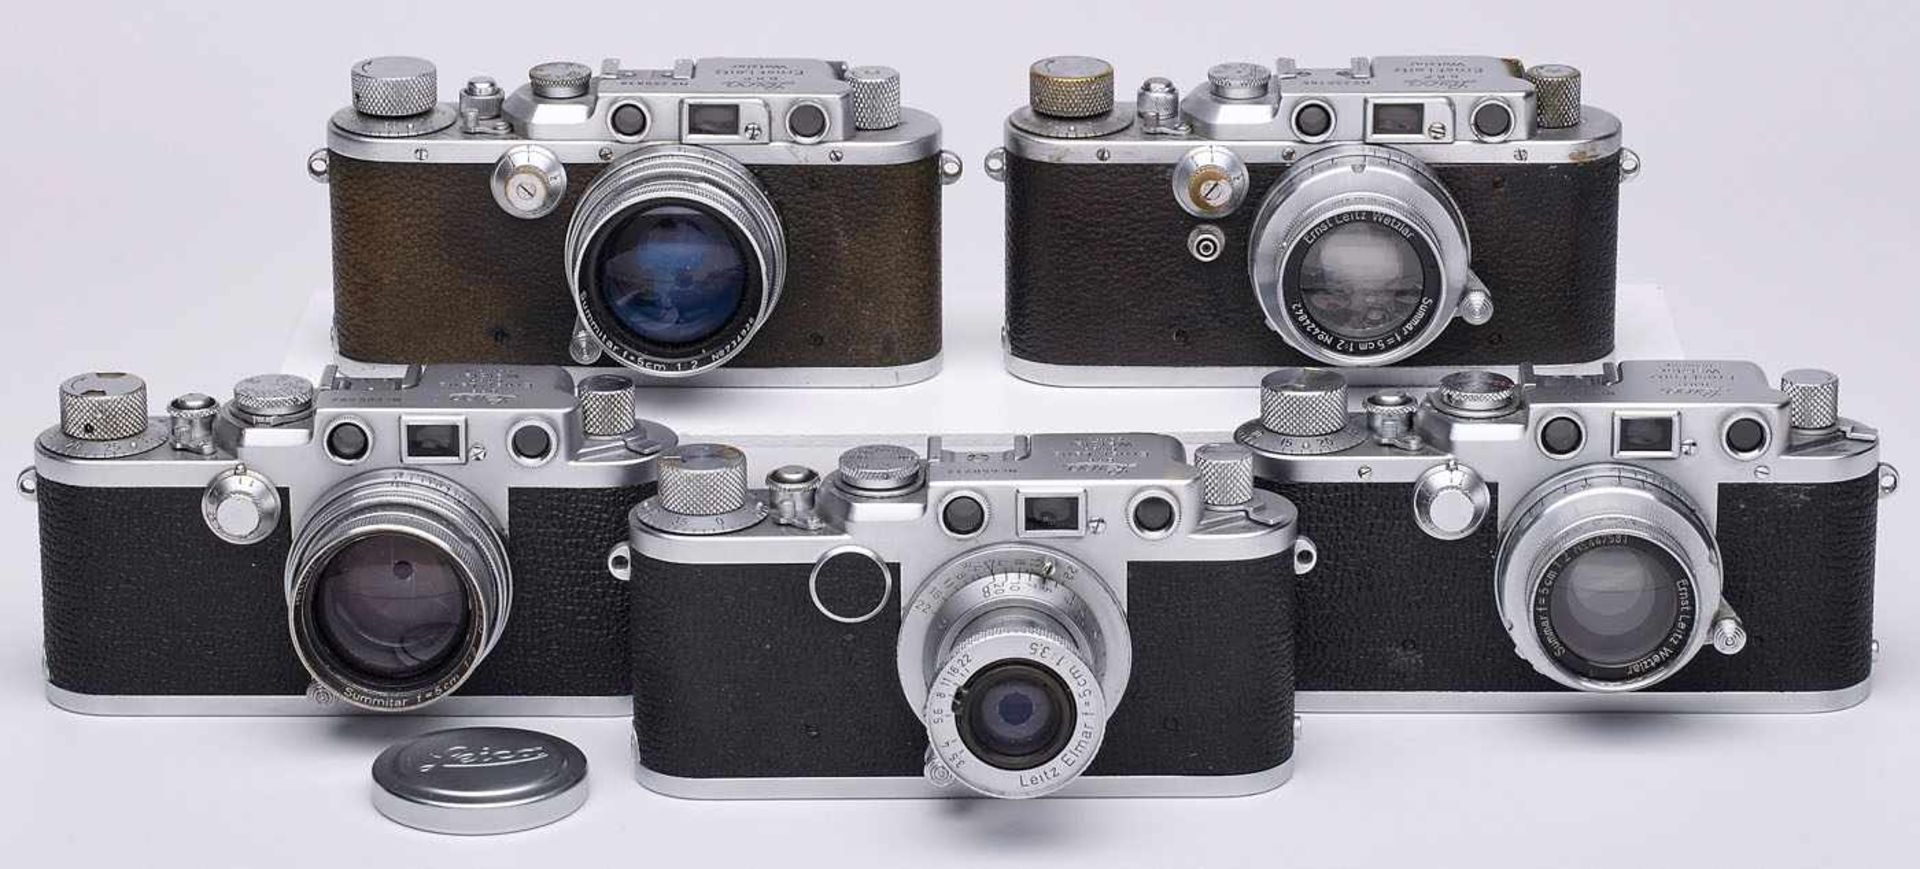 Konvolut von 5 versch. Kameras "Leica",Wetzlar um 1940. Seriennr.: "256166", "260838", "567974", "